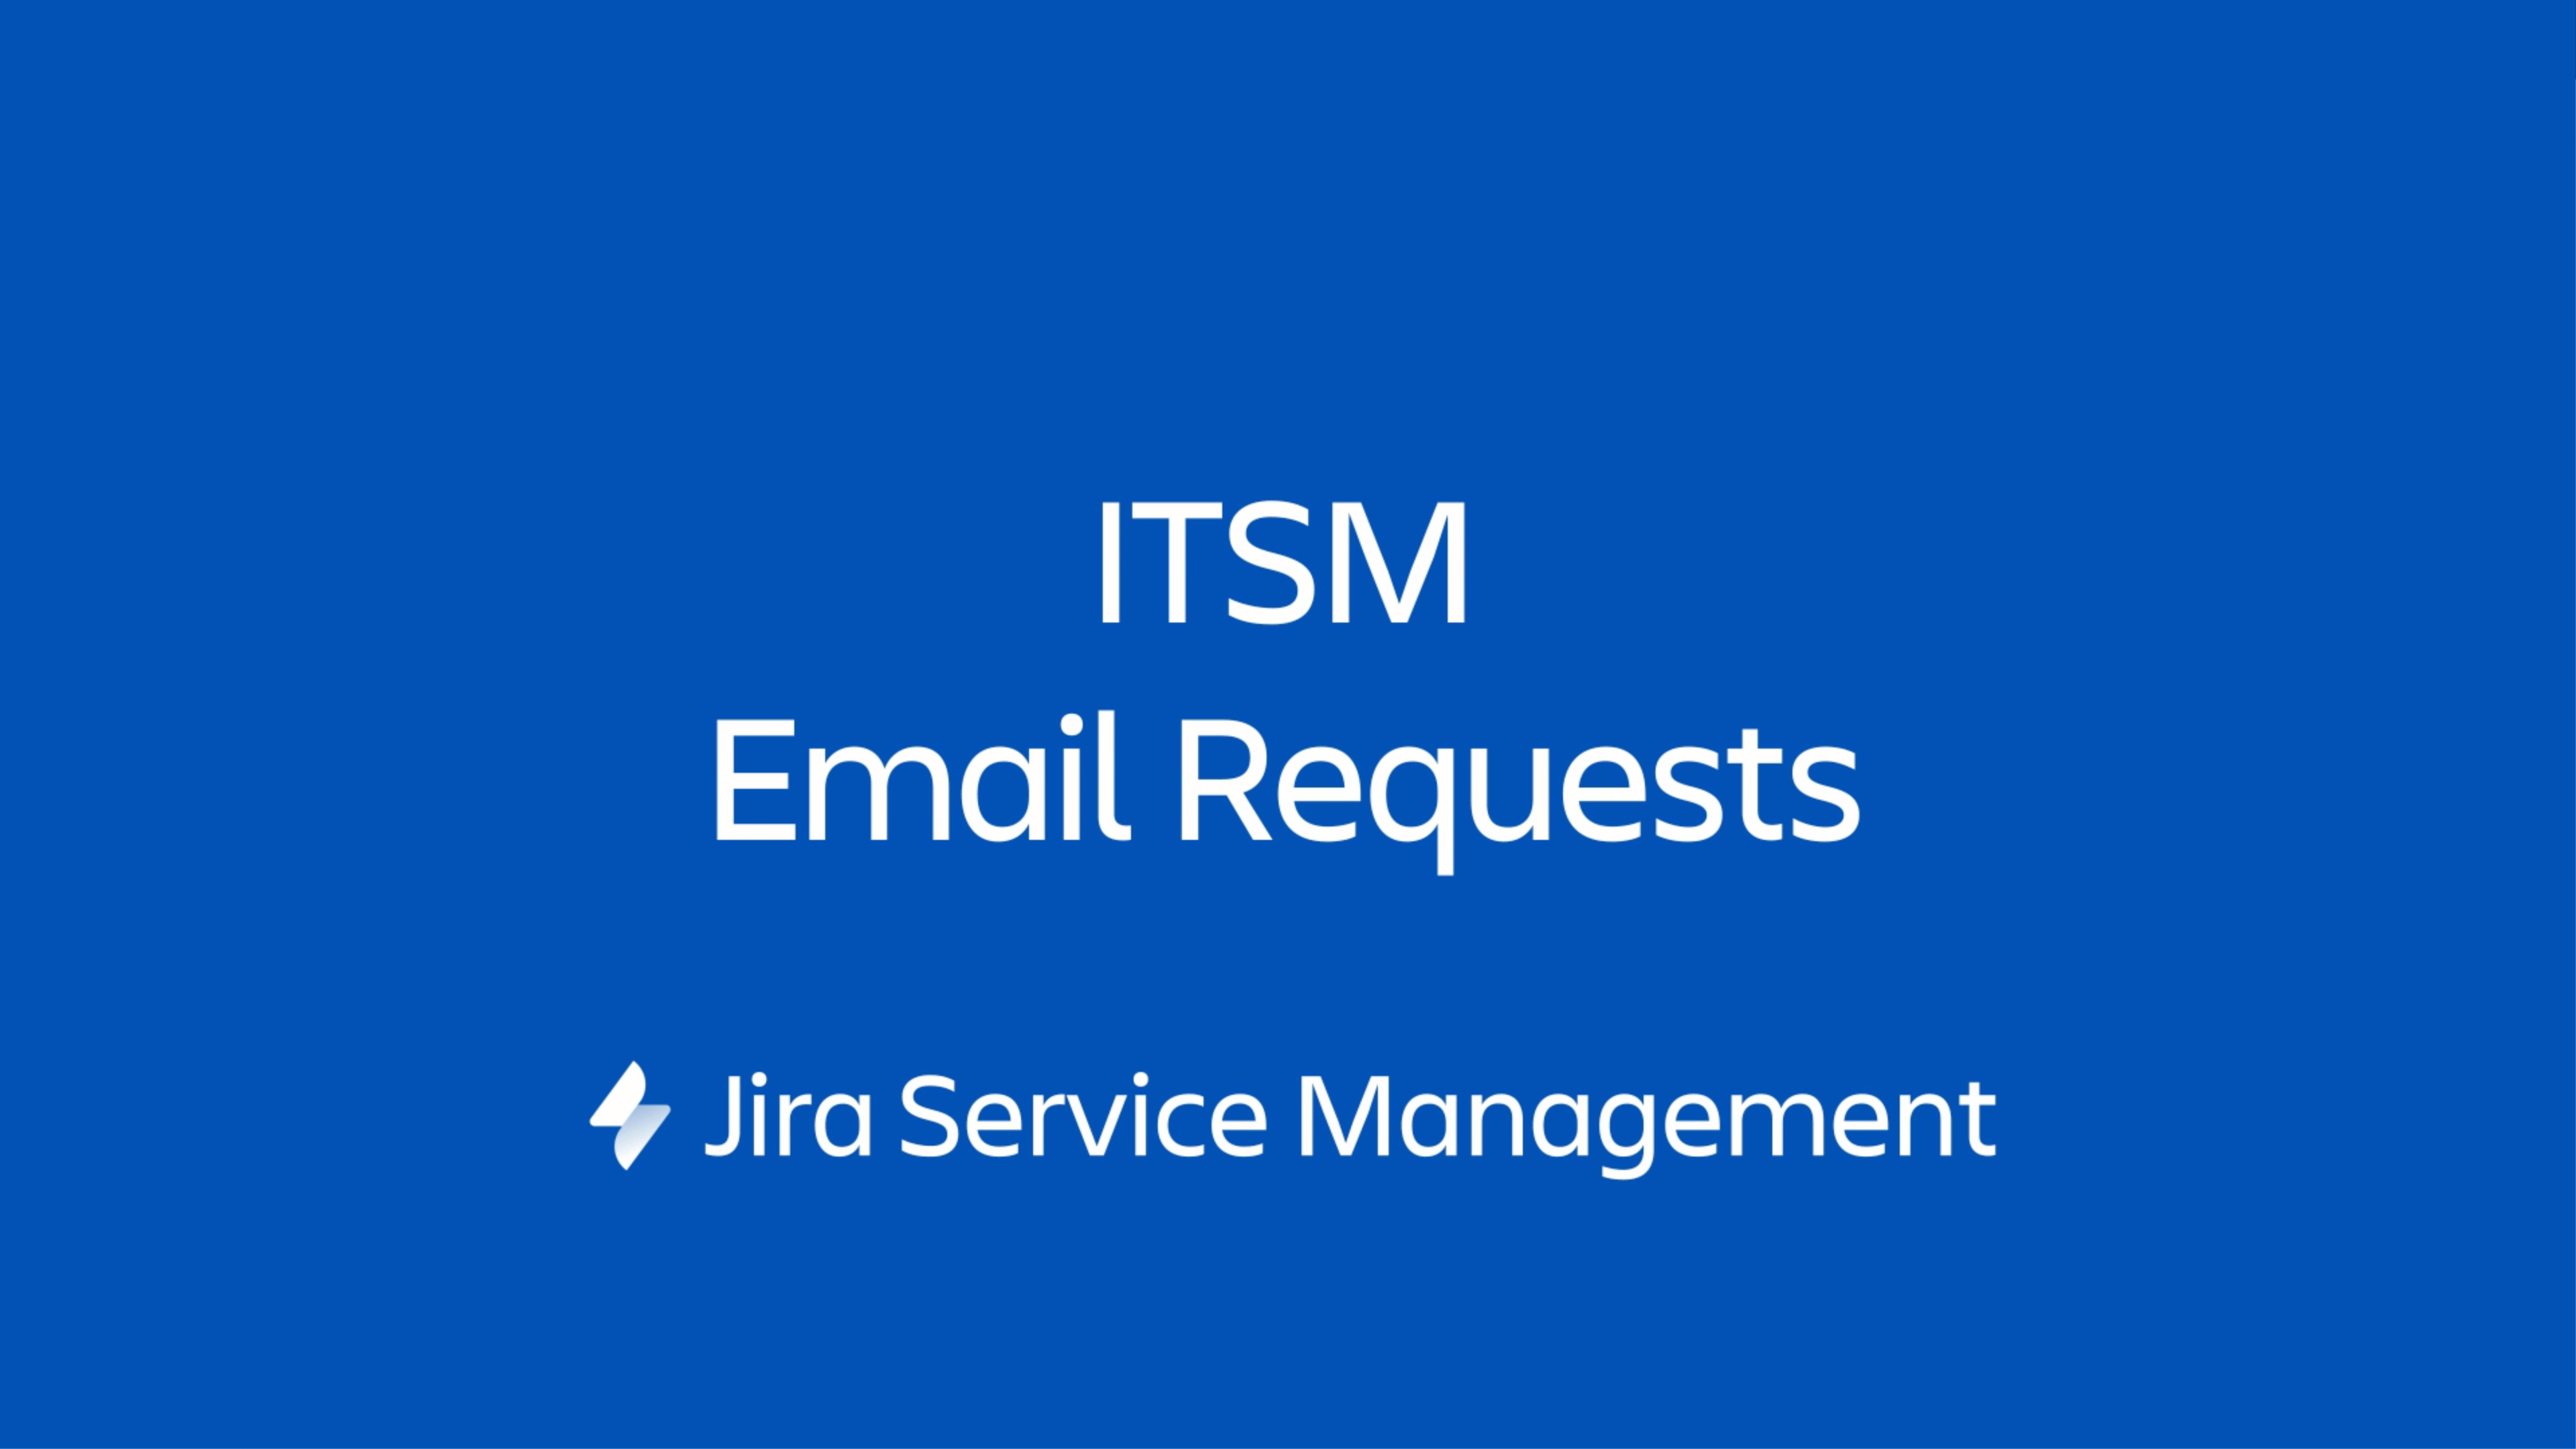 Richieste ITSM via e-mail in Jira Service Management